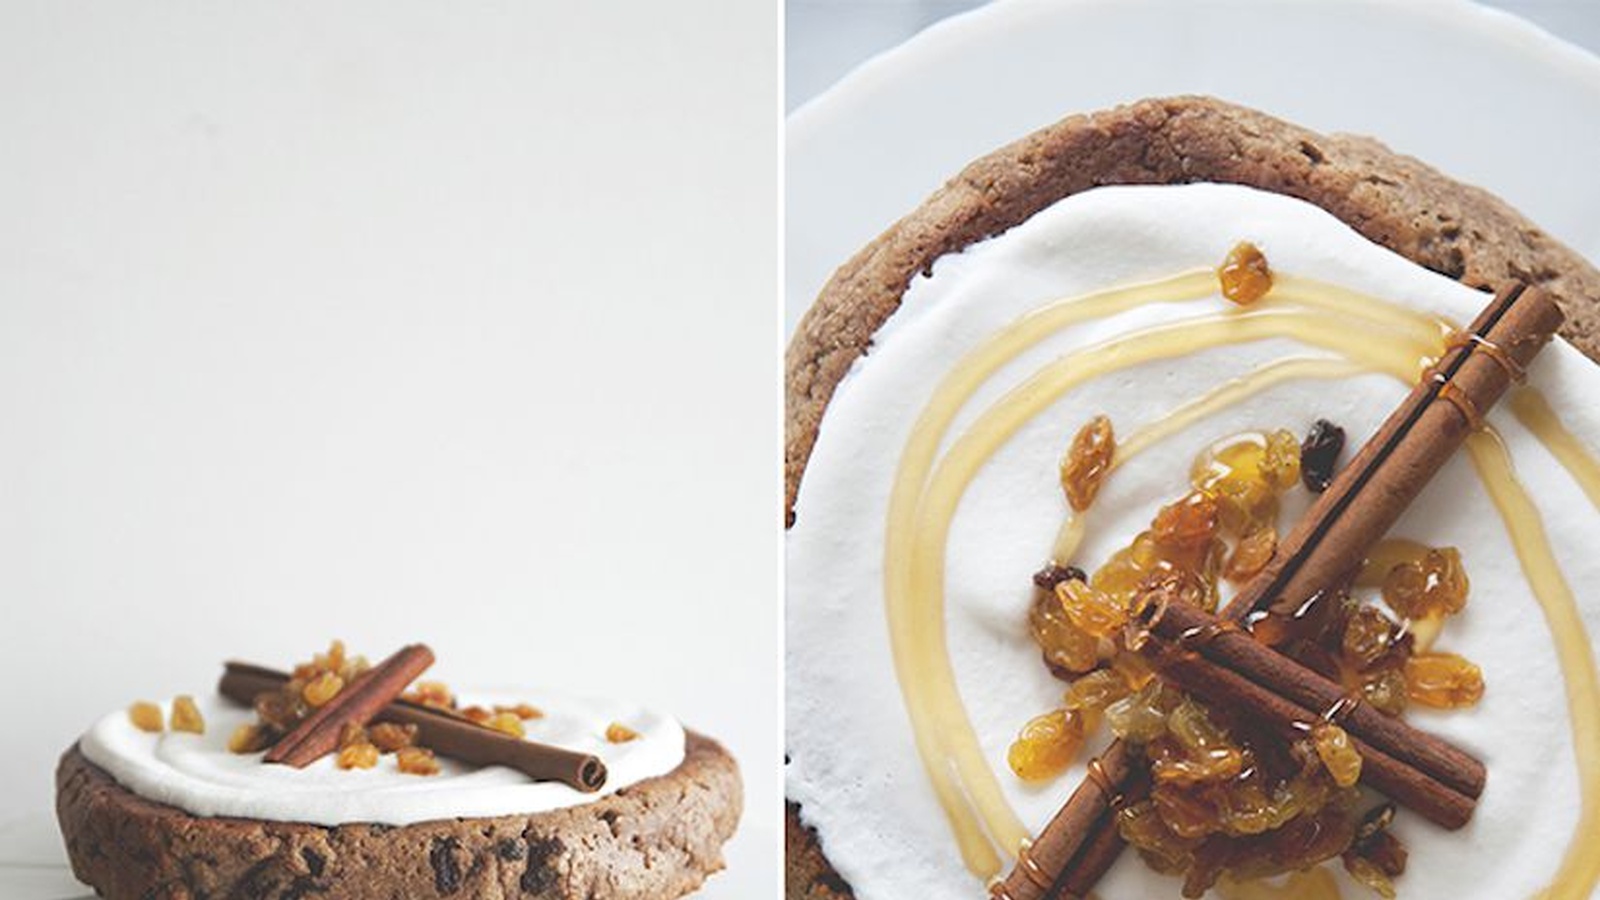 Gluten-Free Dreams: Almond Spice Cake With Coconut Cream